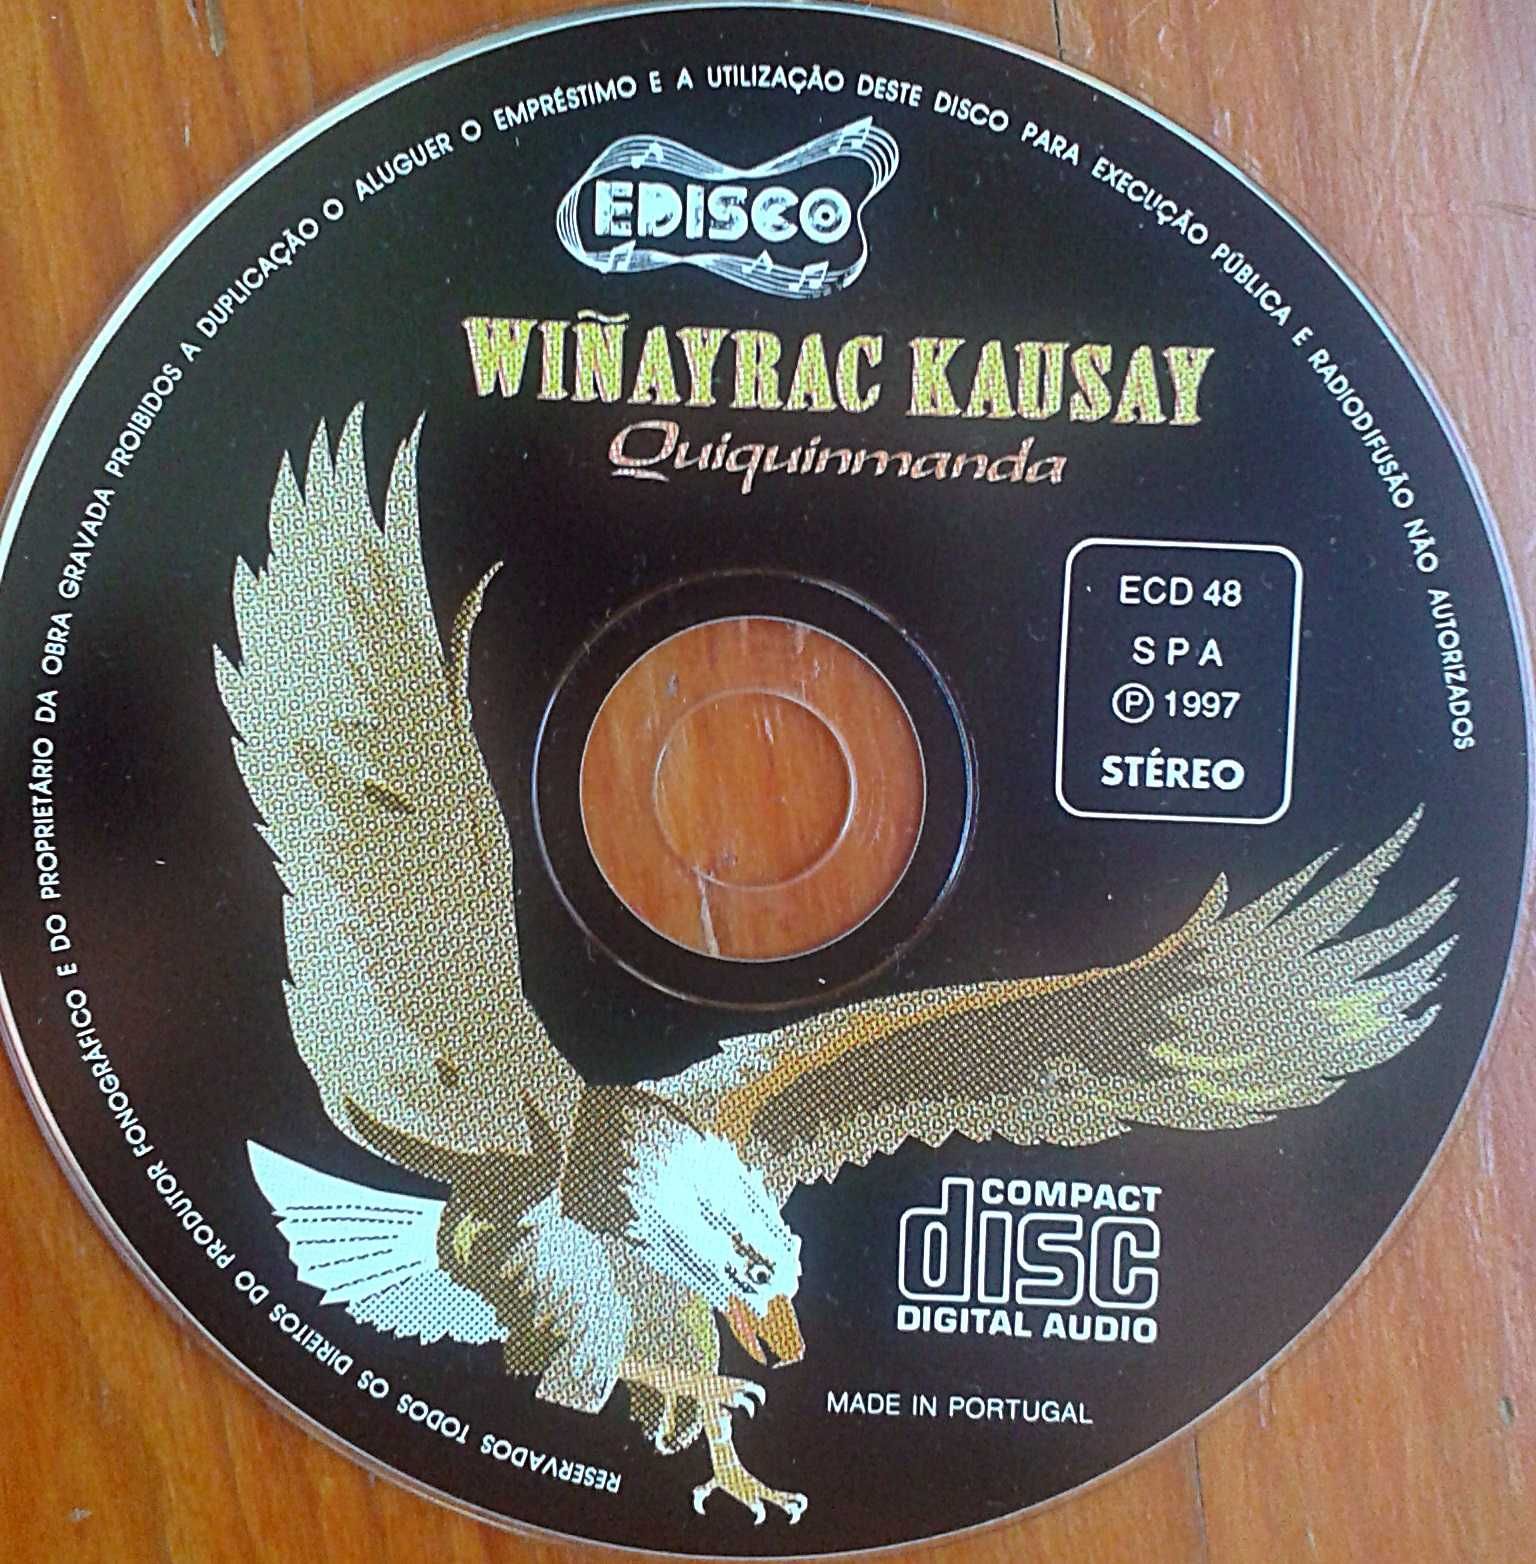 CD musica india do Equador, Andes em espanhol Wi kAUSAY. Incl portes